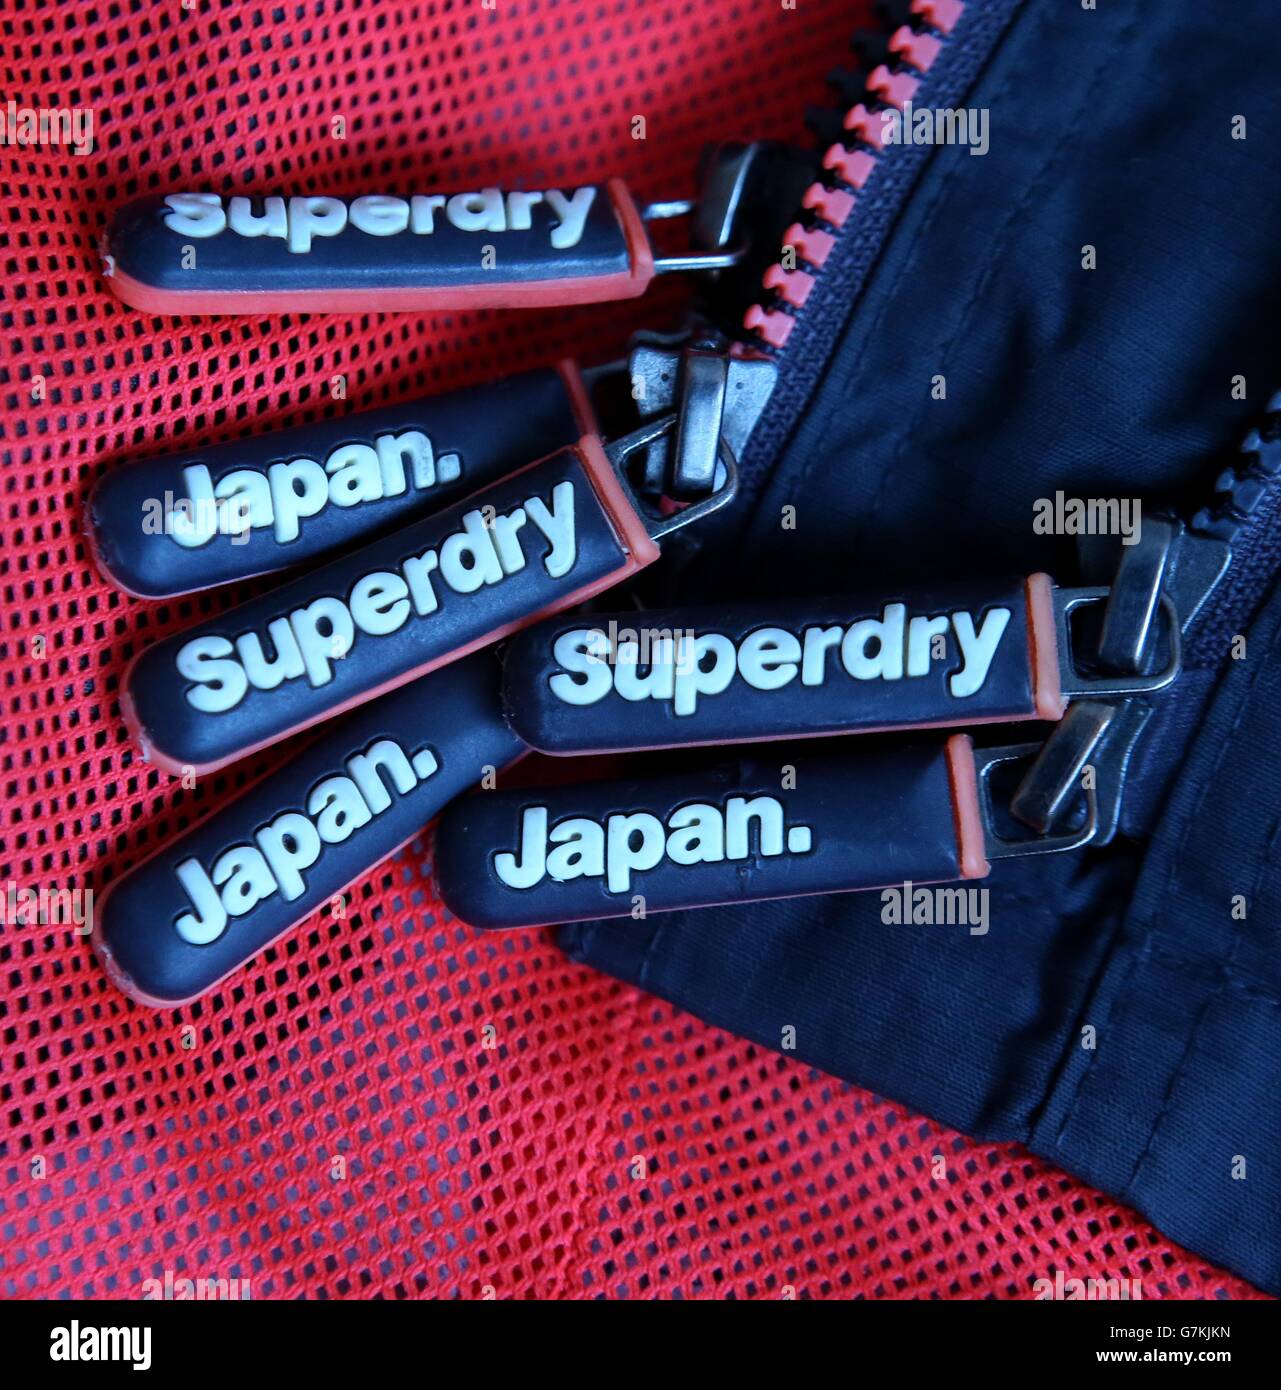 Un primo piano di abbigliamento di marca Superdry, come il proprietario del  marchio Superdry ha ripreso dal suo blues autunno oggi dopo un Natale forte  guidato da entrate online record e tempo